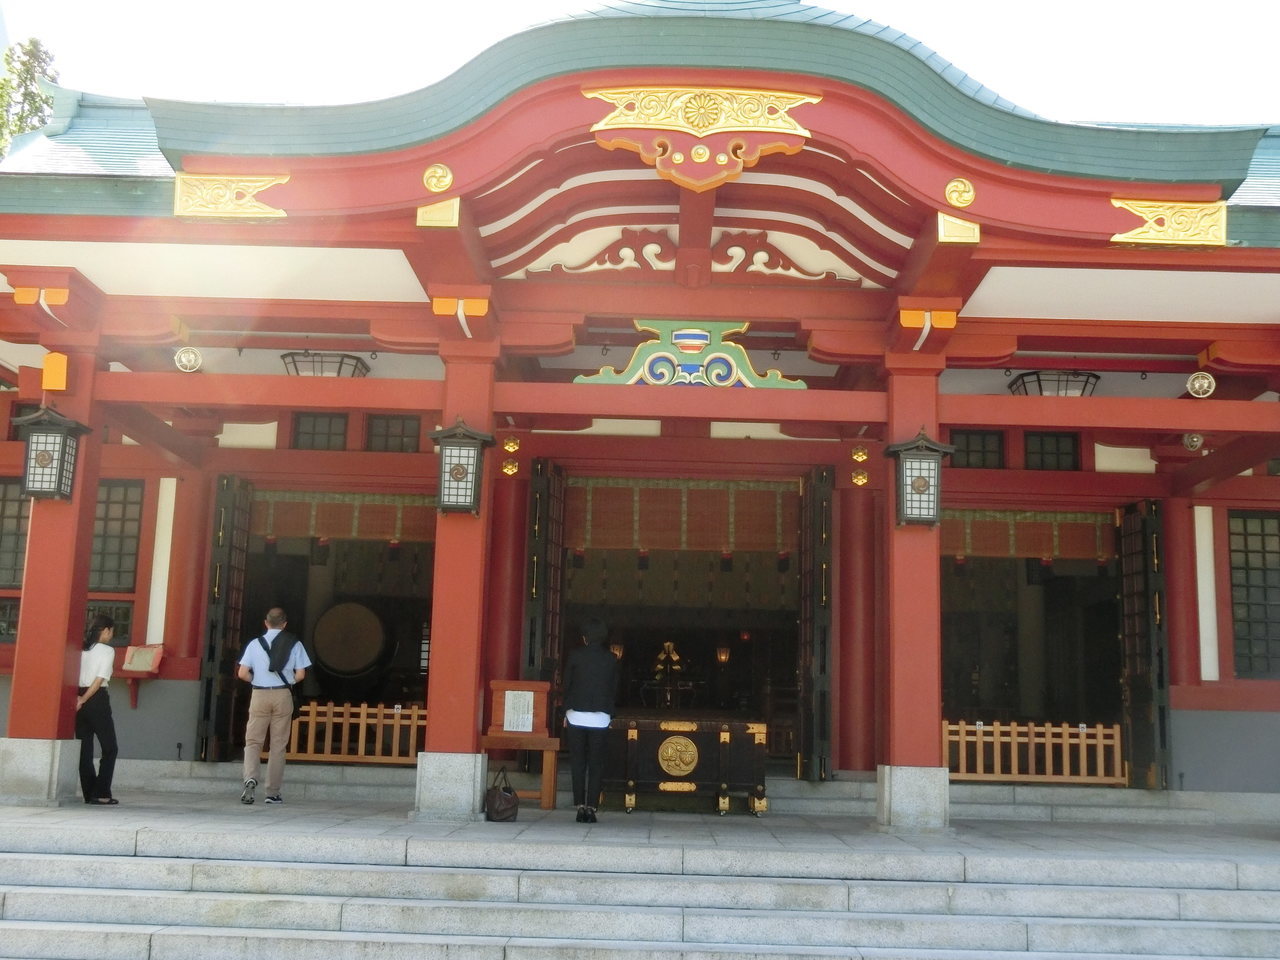 日枝神社.JPG